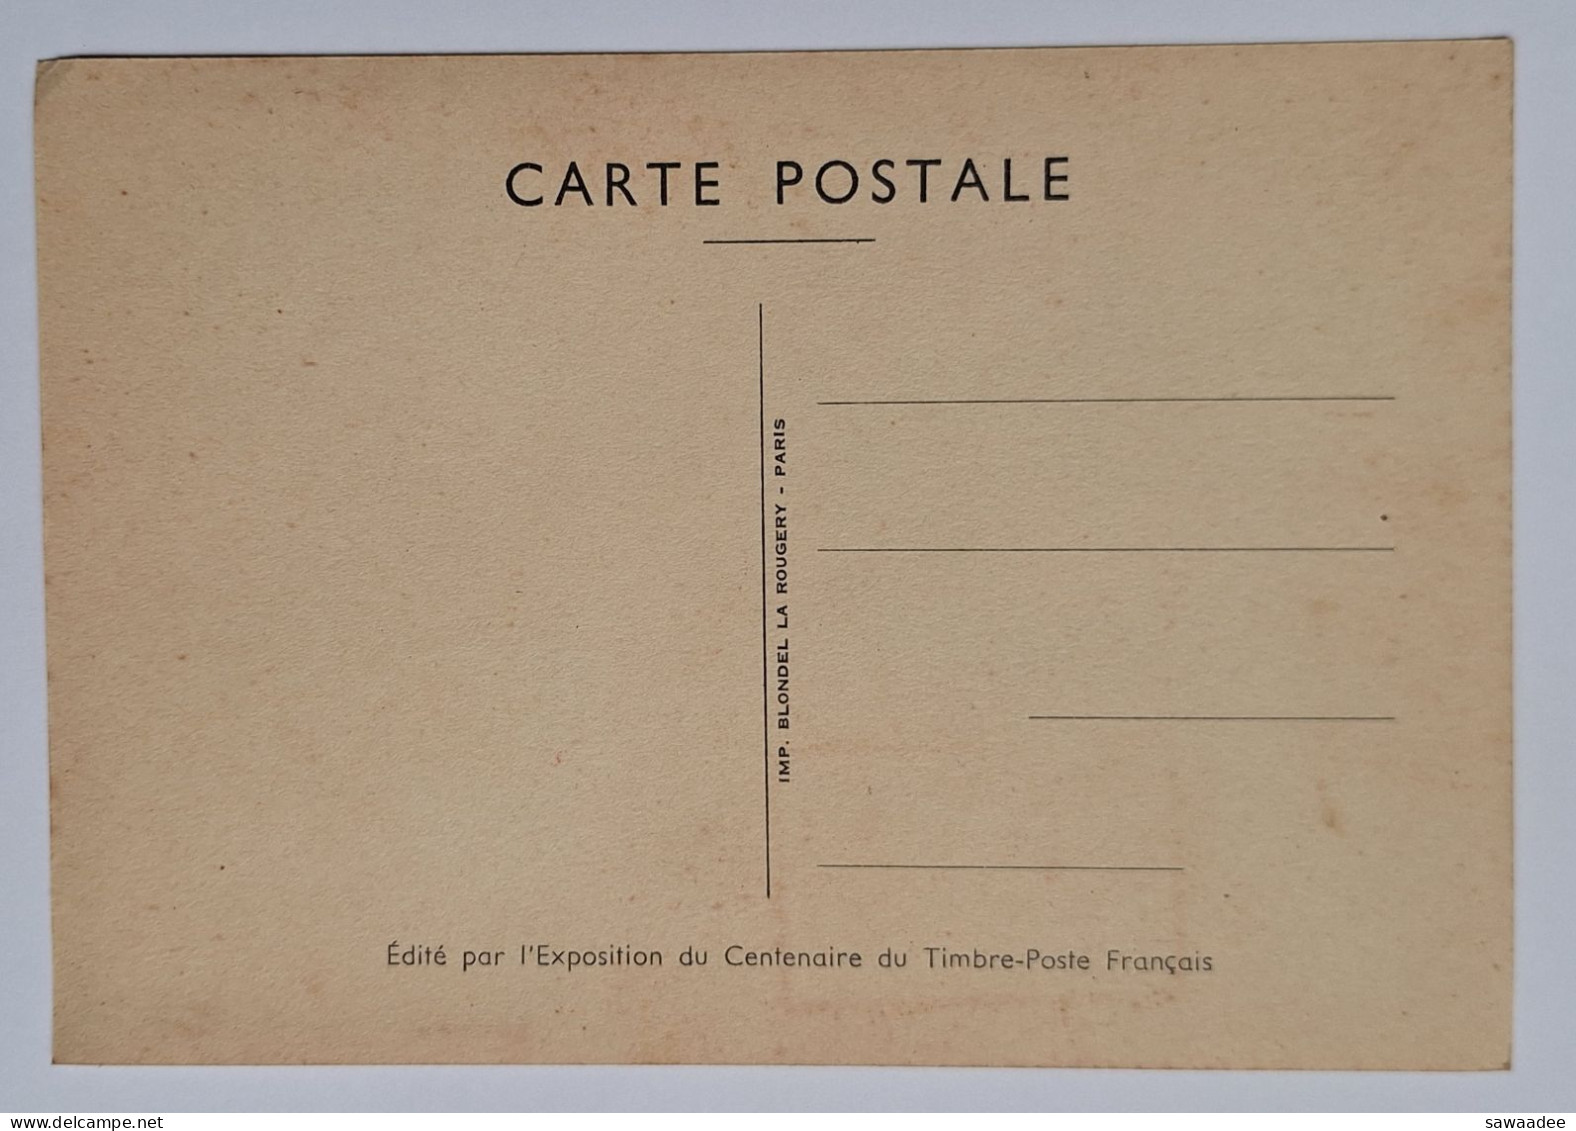 CARTE POSTALE FRANCE - CENTENAIRE DU TIMBRE POSTAL FRANCAIS 1949 - GRAND PALAIS - 1er JUIN 1949 - Postal Services